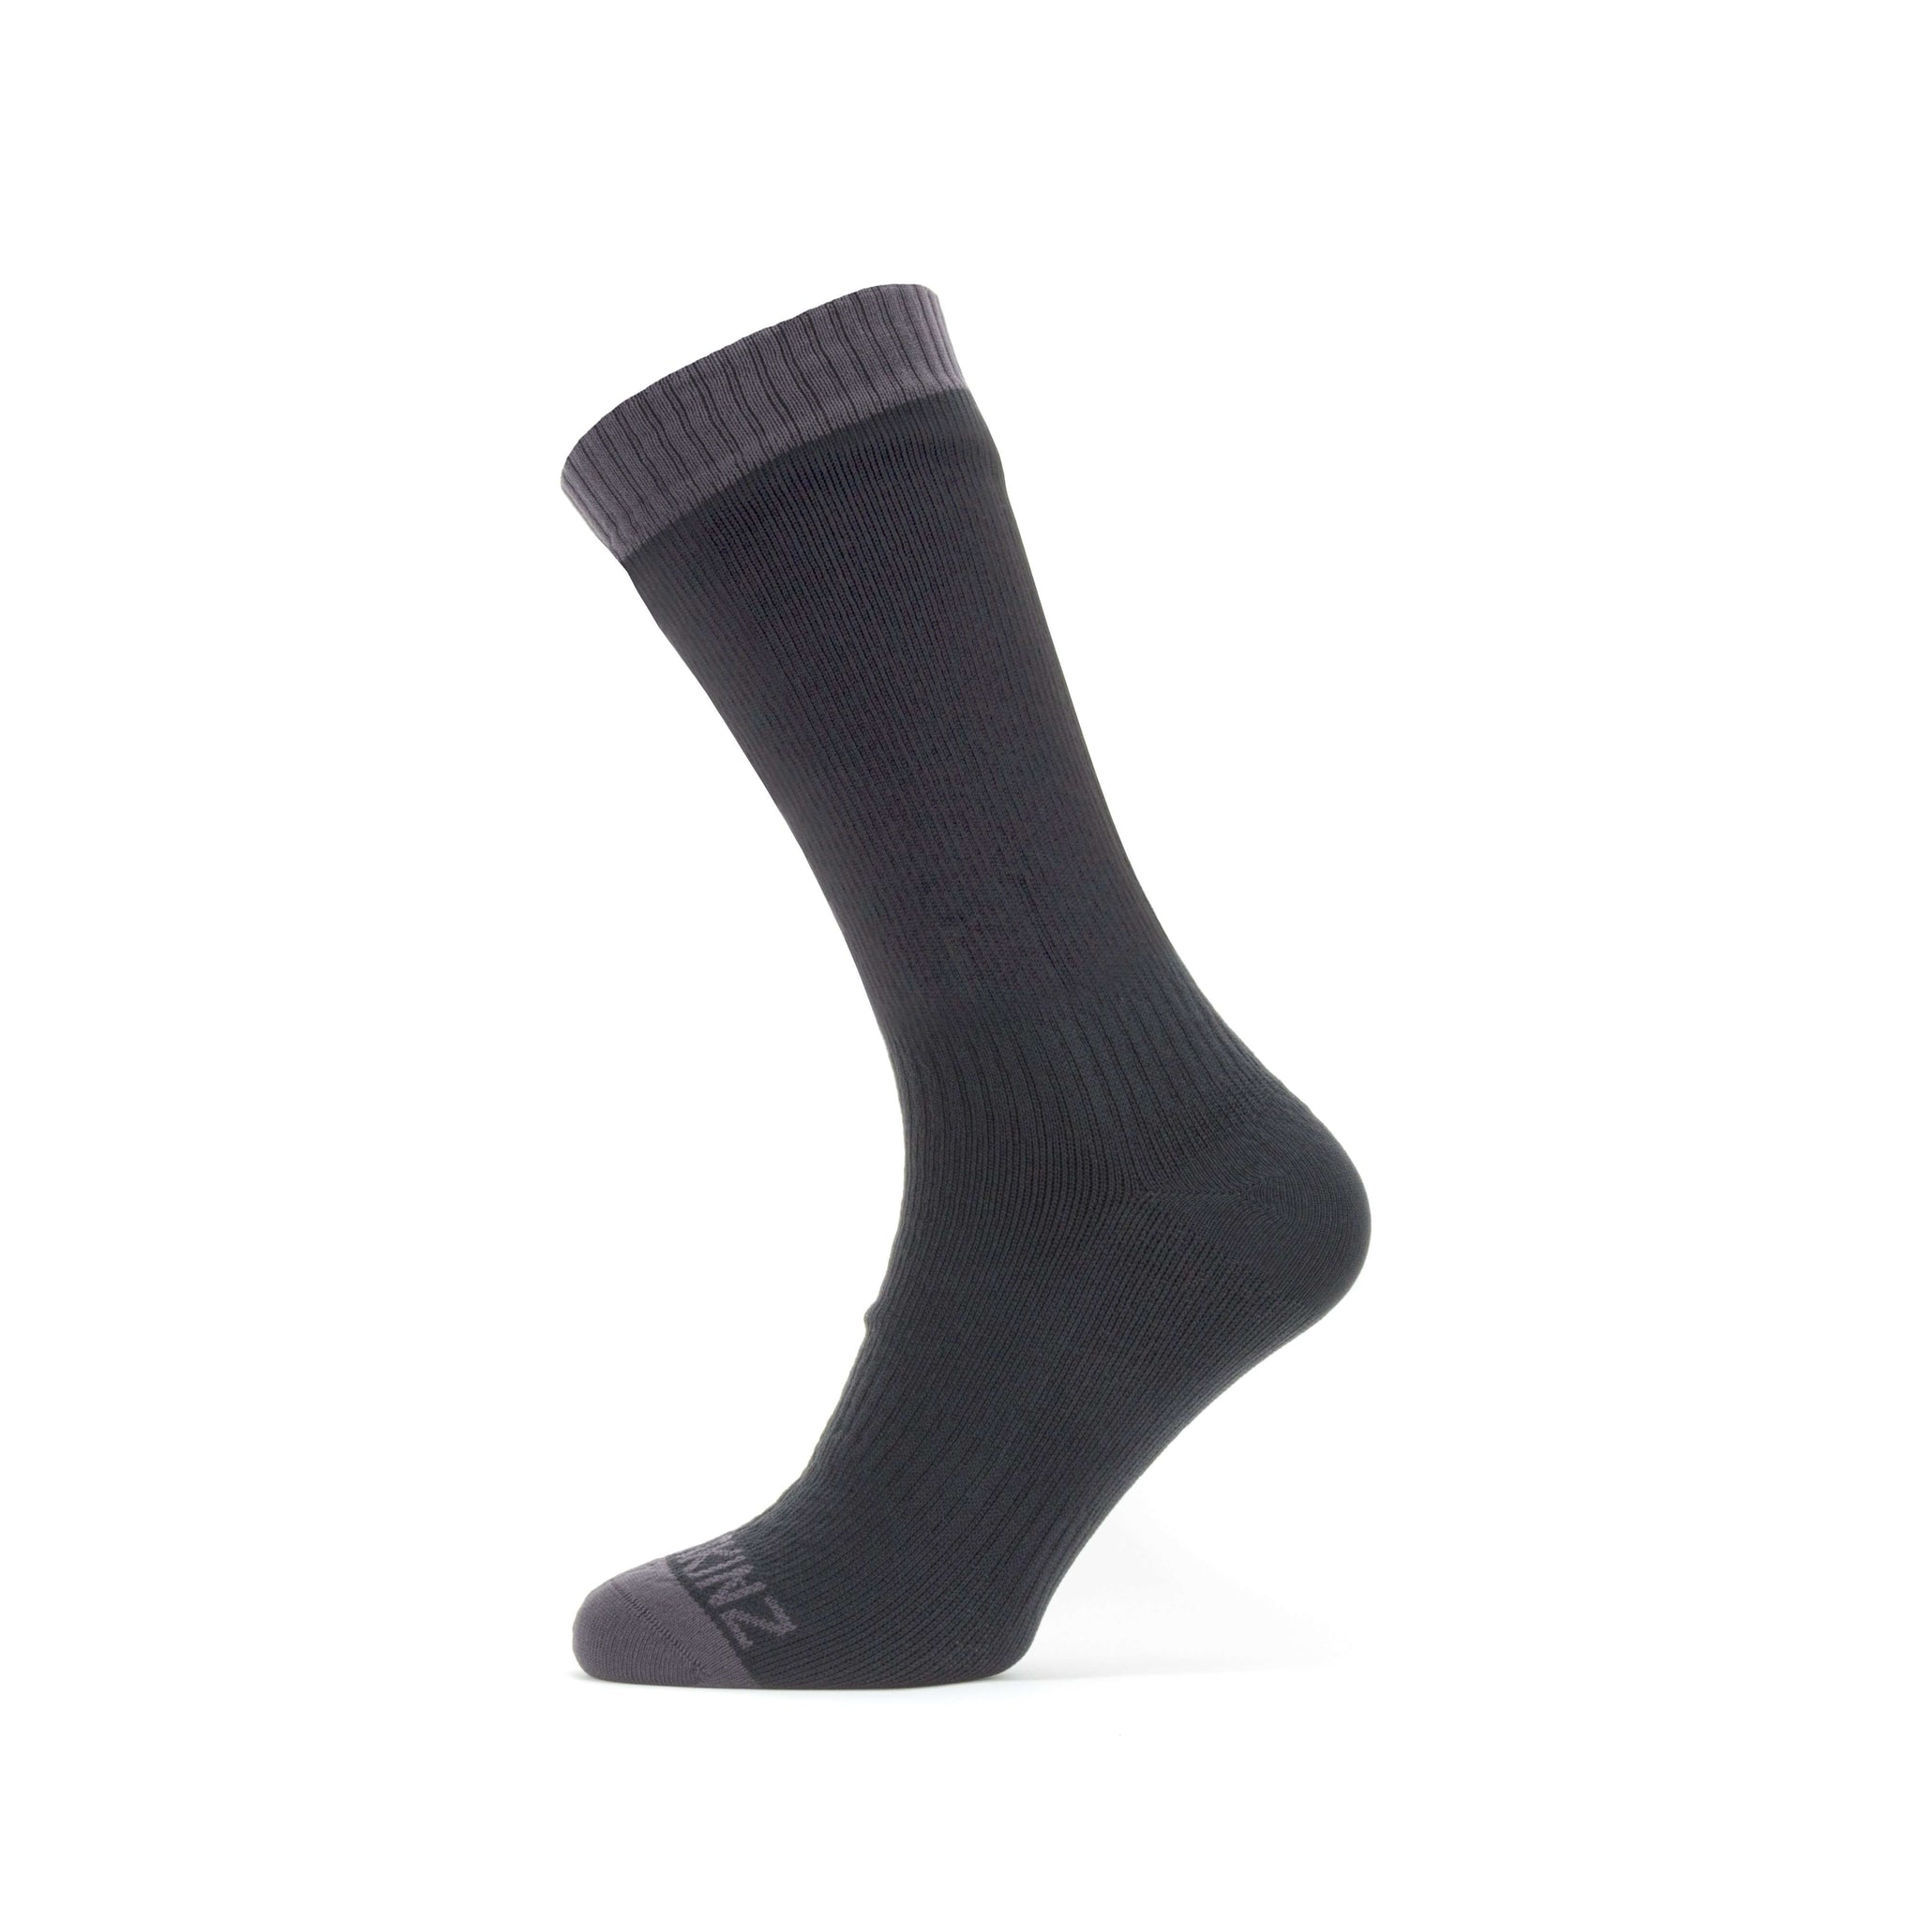 Sealskinz Waterproof Warm Weather Mid Sock in Black / Grey